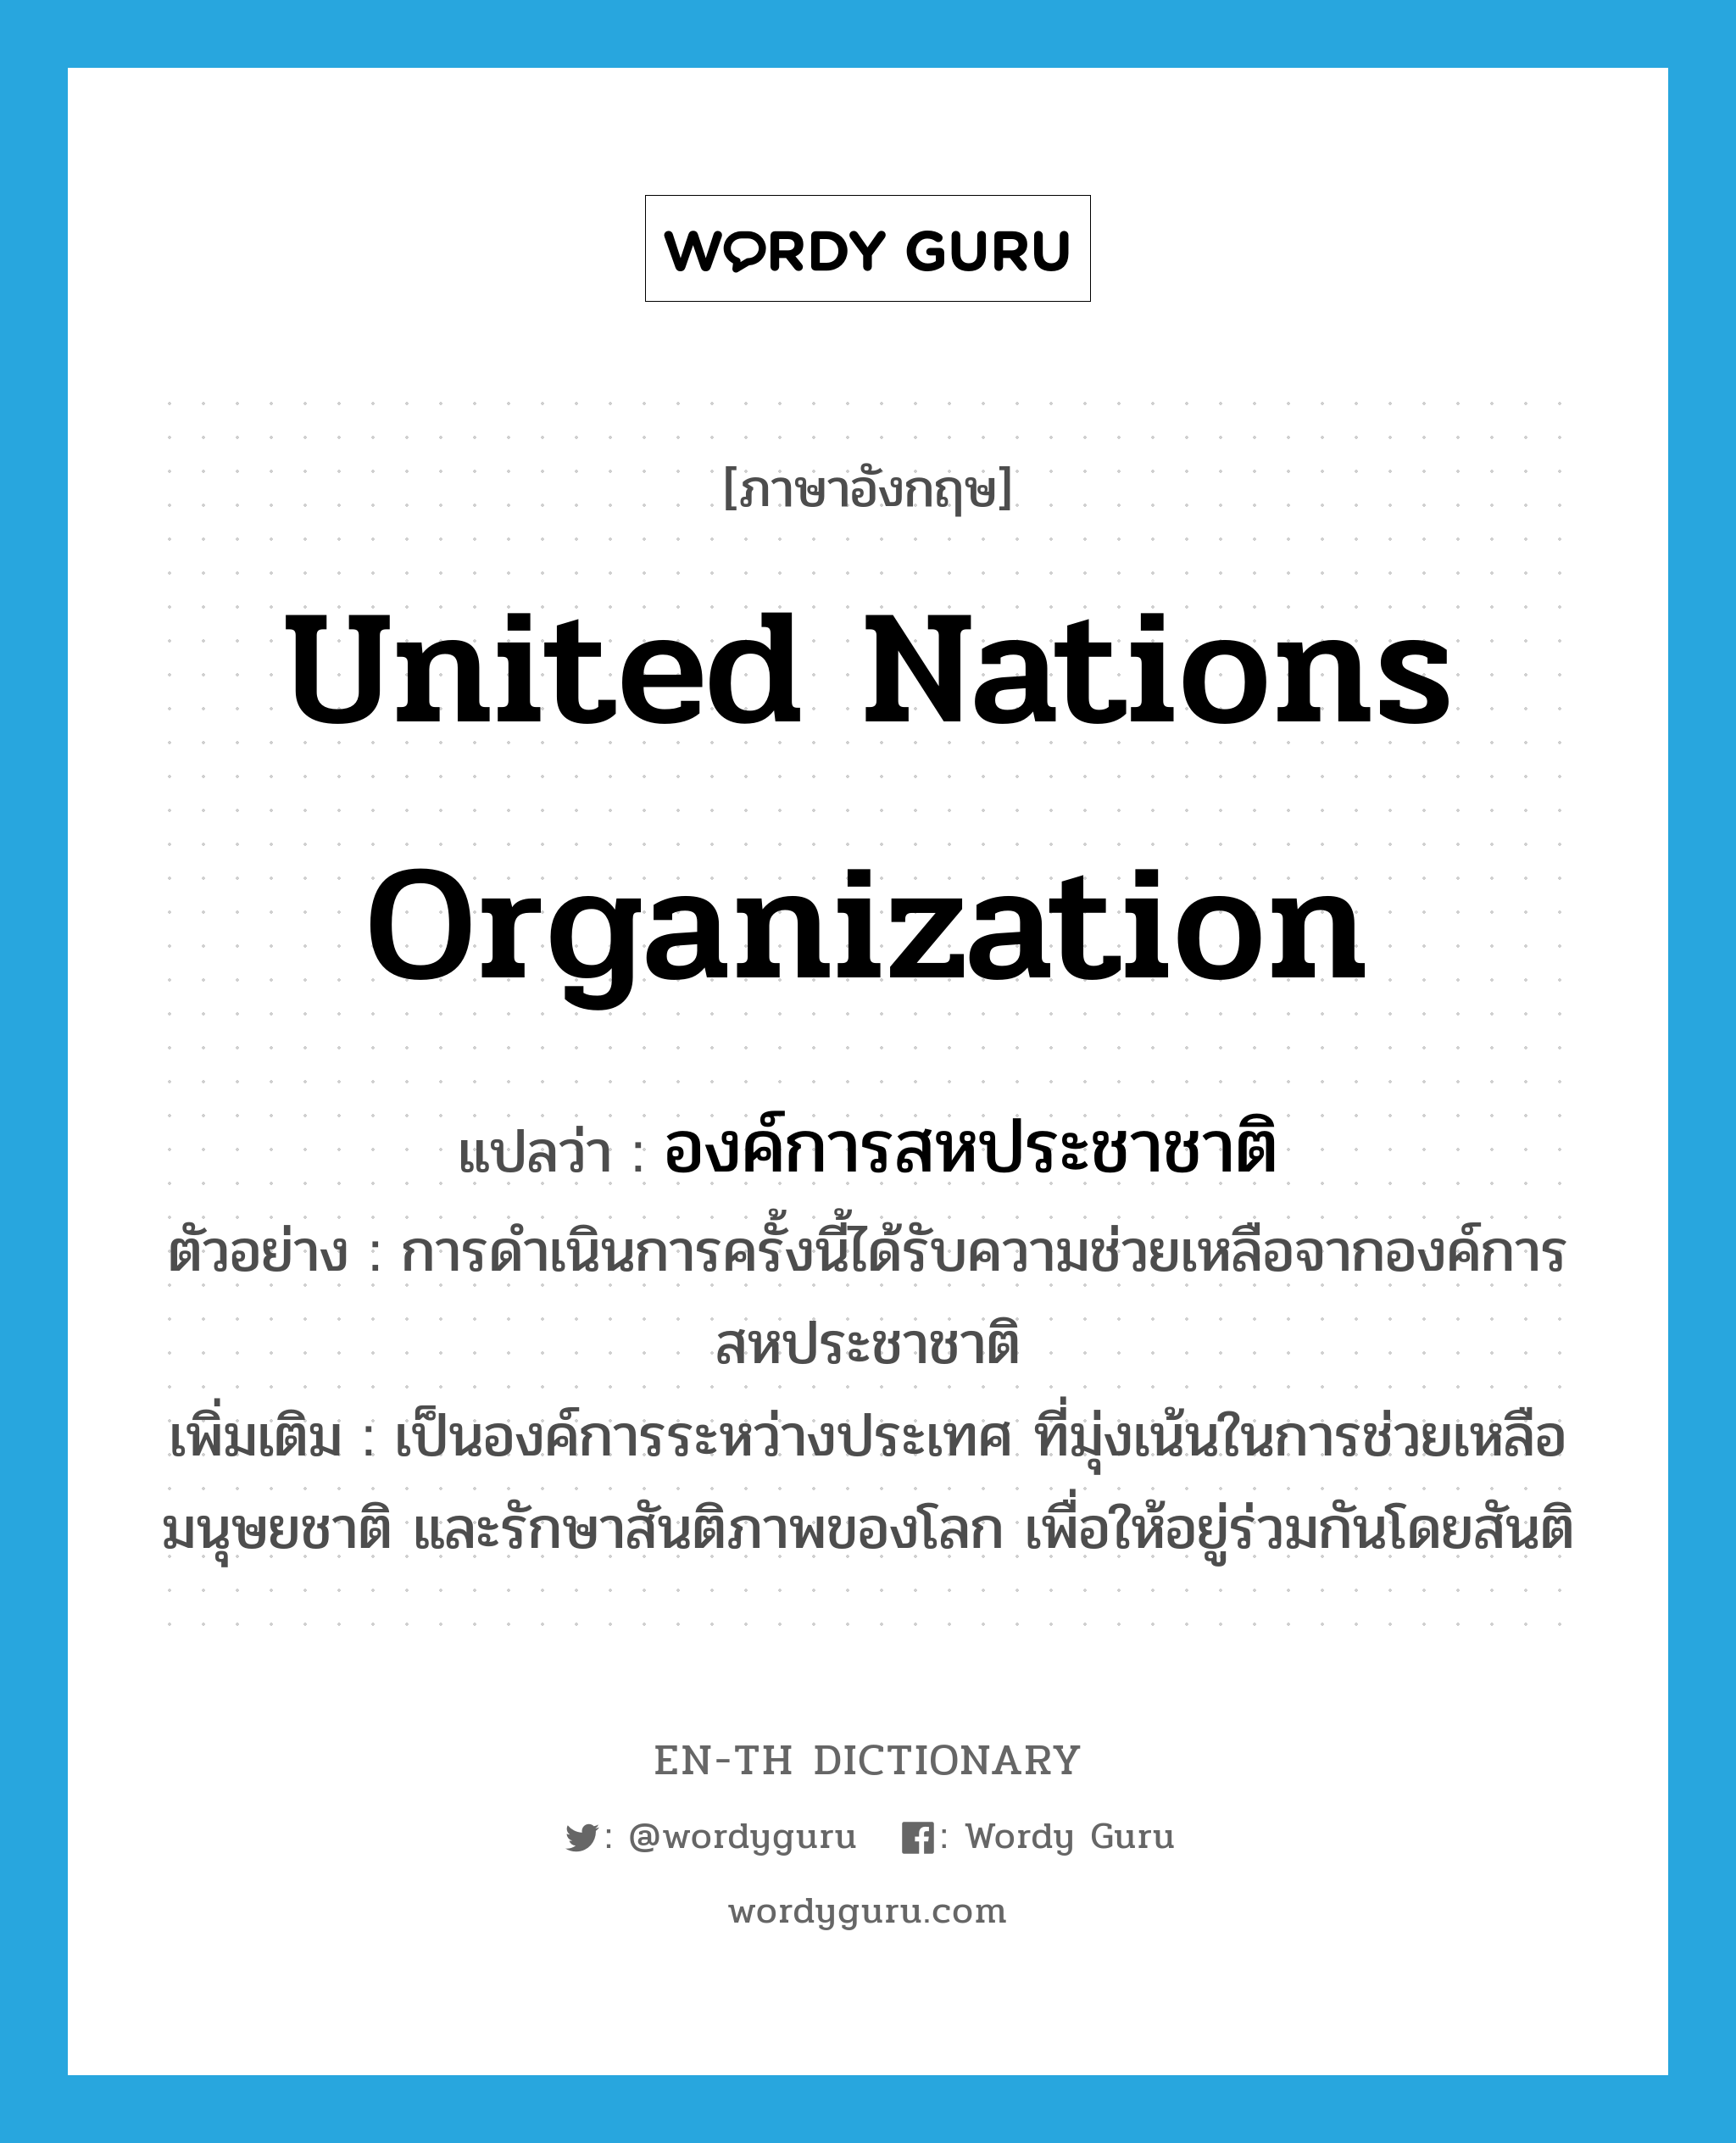 United Nations Organization แปลว่า?, คำศัพท์ภาษาอังกฤษ United Nations Organization แปลว่า องค์การสหประชาชาติ ประเภท N ตัวอย่าง การดำเนินการครั้งนี้ได้รับความช่วยเหลือจากองค์การสหประชาชาติ เพิ่มเติม เป็นองค์การระหว่างประเทศ ที่มุ่งเน้นในการช่วยเหลือ มนุษยชาติ และรักษาสันติภาพของโลก เพื่อให้อยู่ร่วมกันโดยสันติ หมวด N